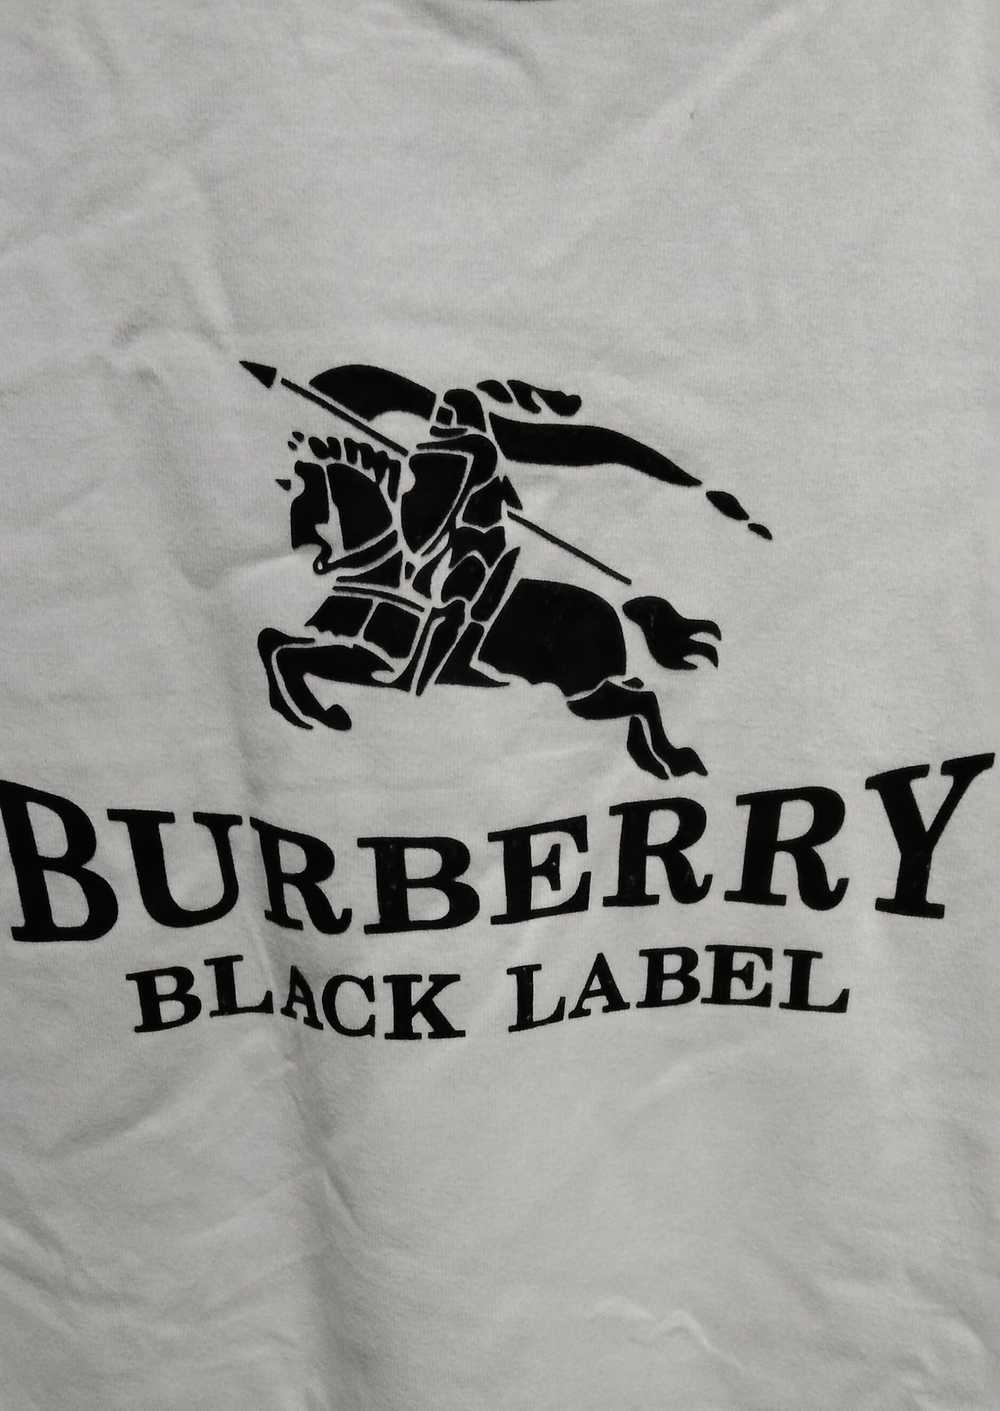 Burberry BURBERRY BLUE LABEL BIG LOGO - image 3